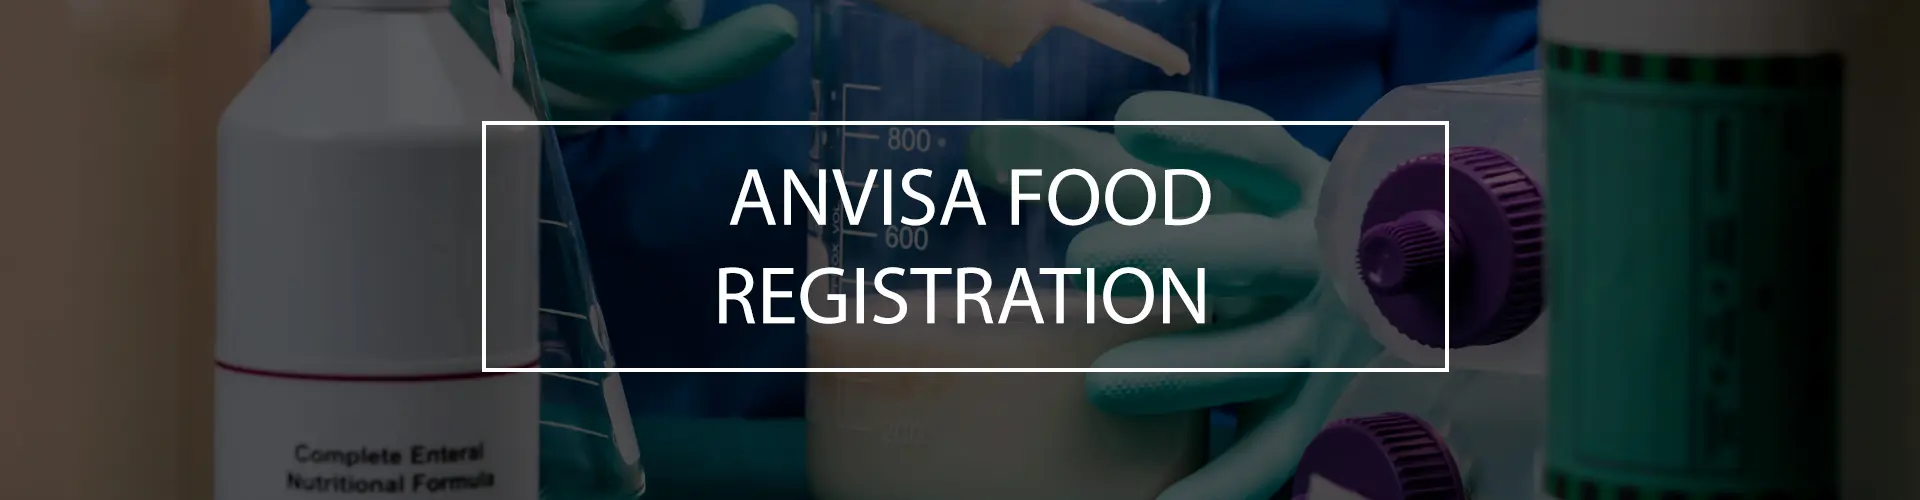 anvisa food registration